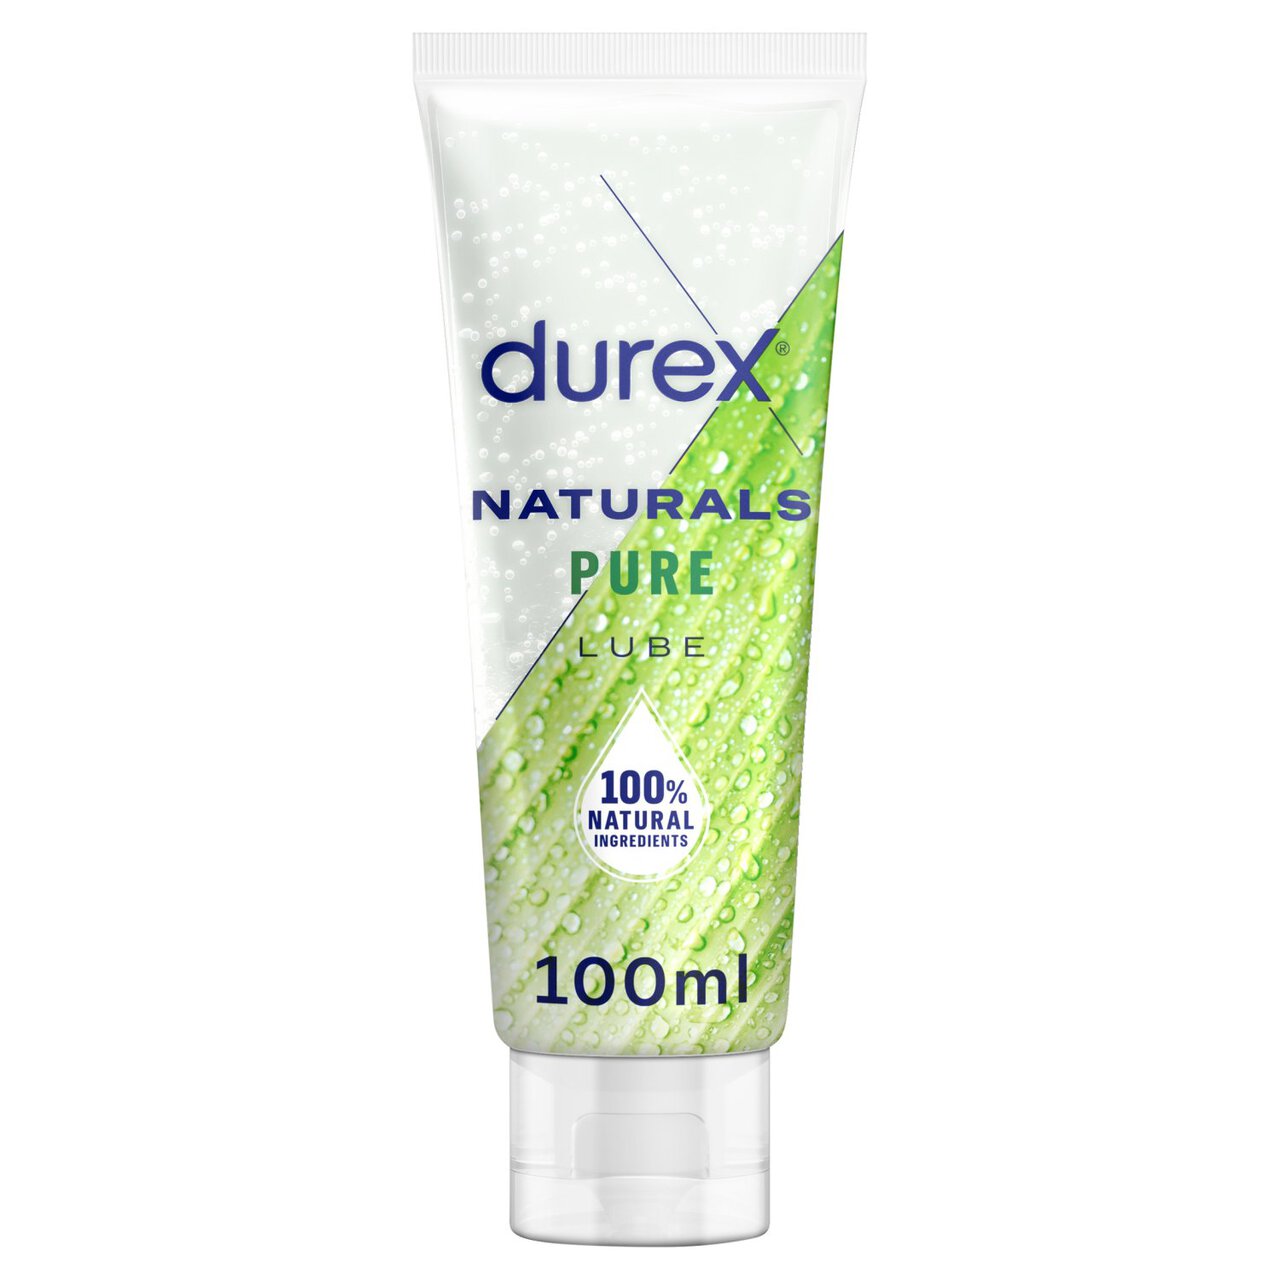 Durex Naturals Intimate Gel Pure 100ml 100ml